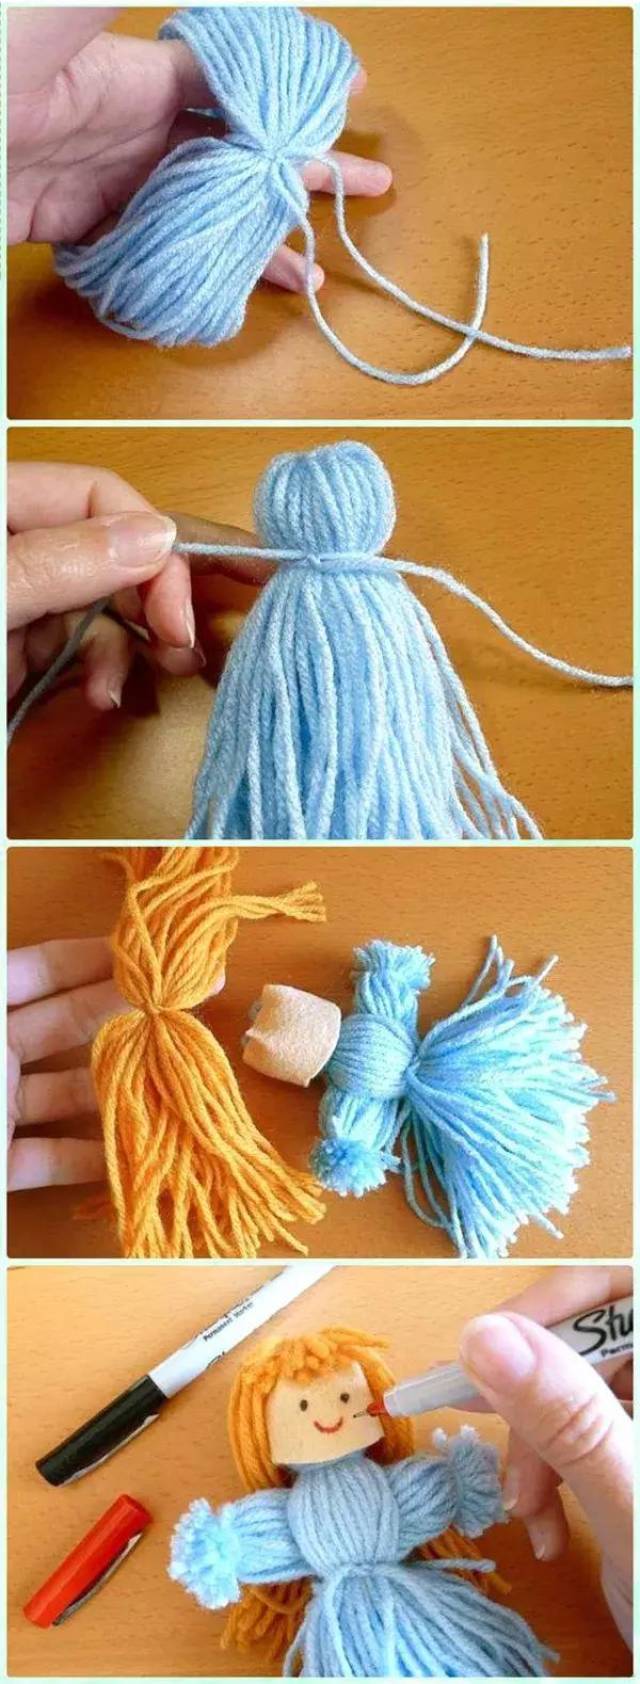 这款简单的毛线小人偶一定不可以错过 做法: 将毛线在手上绕圈,差不